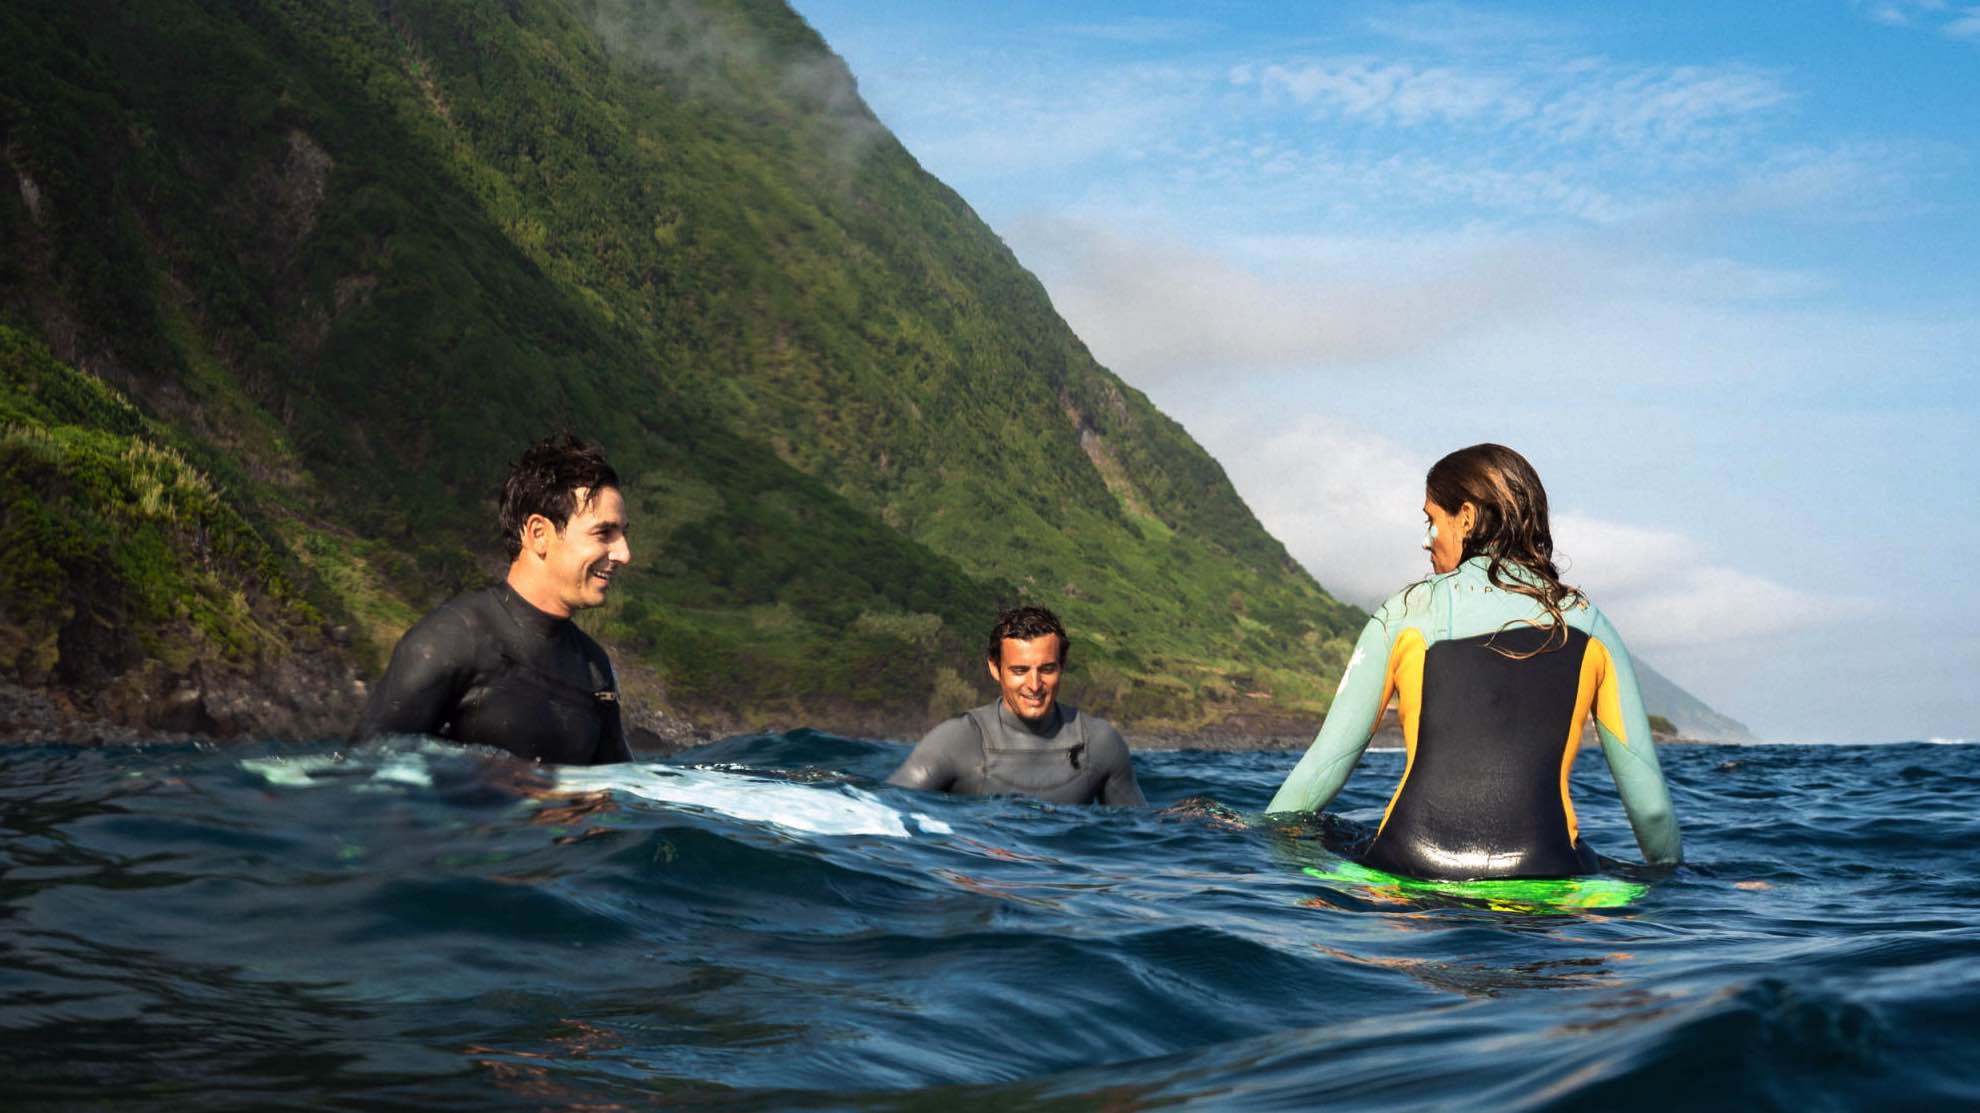 Fajã Santo Cristo surfing with friends